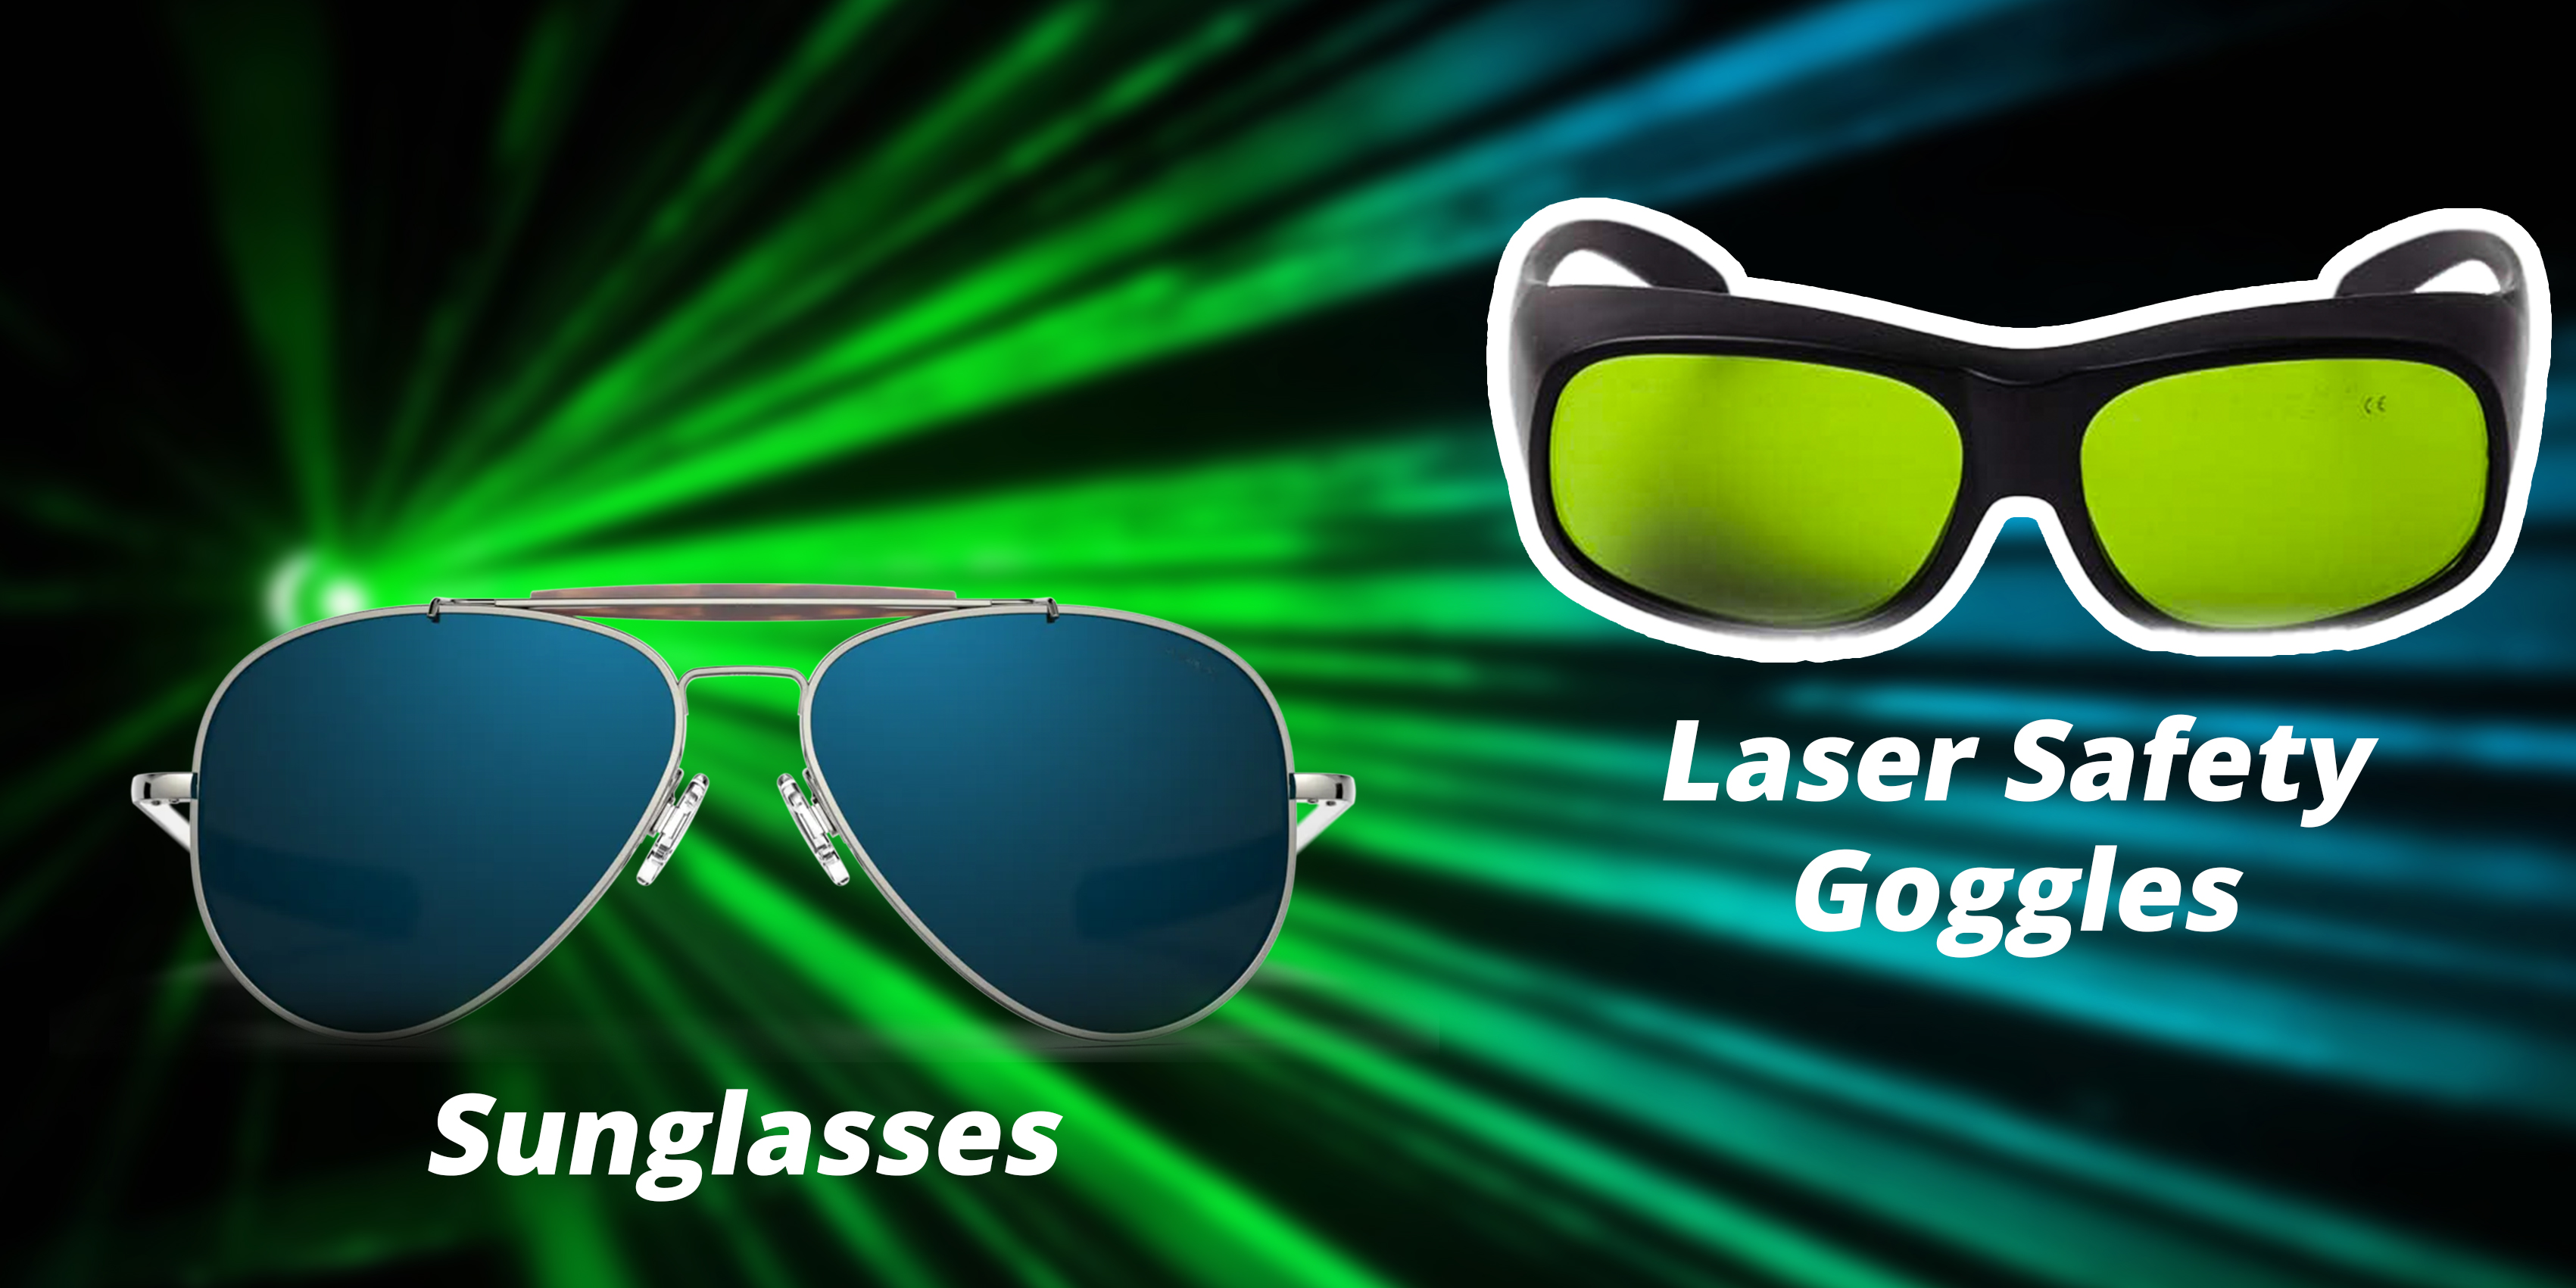 Sonnenbrille oder Laserbrille: Welche sollte man für den Laserschutz wählen?